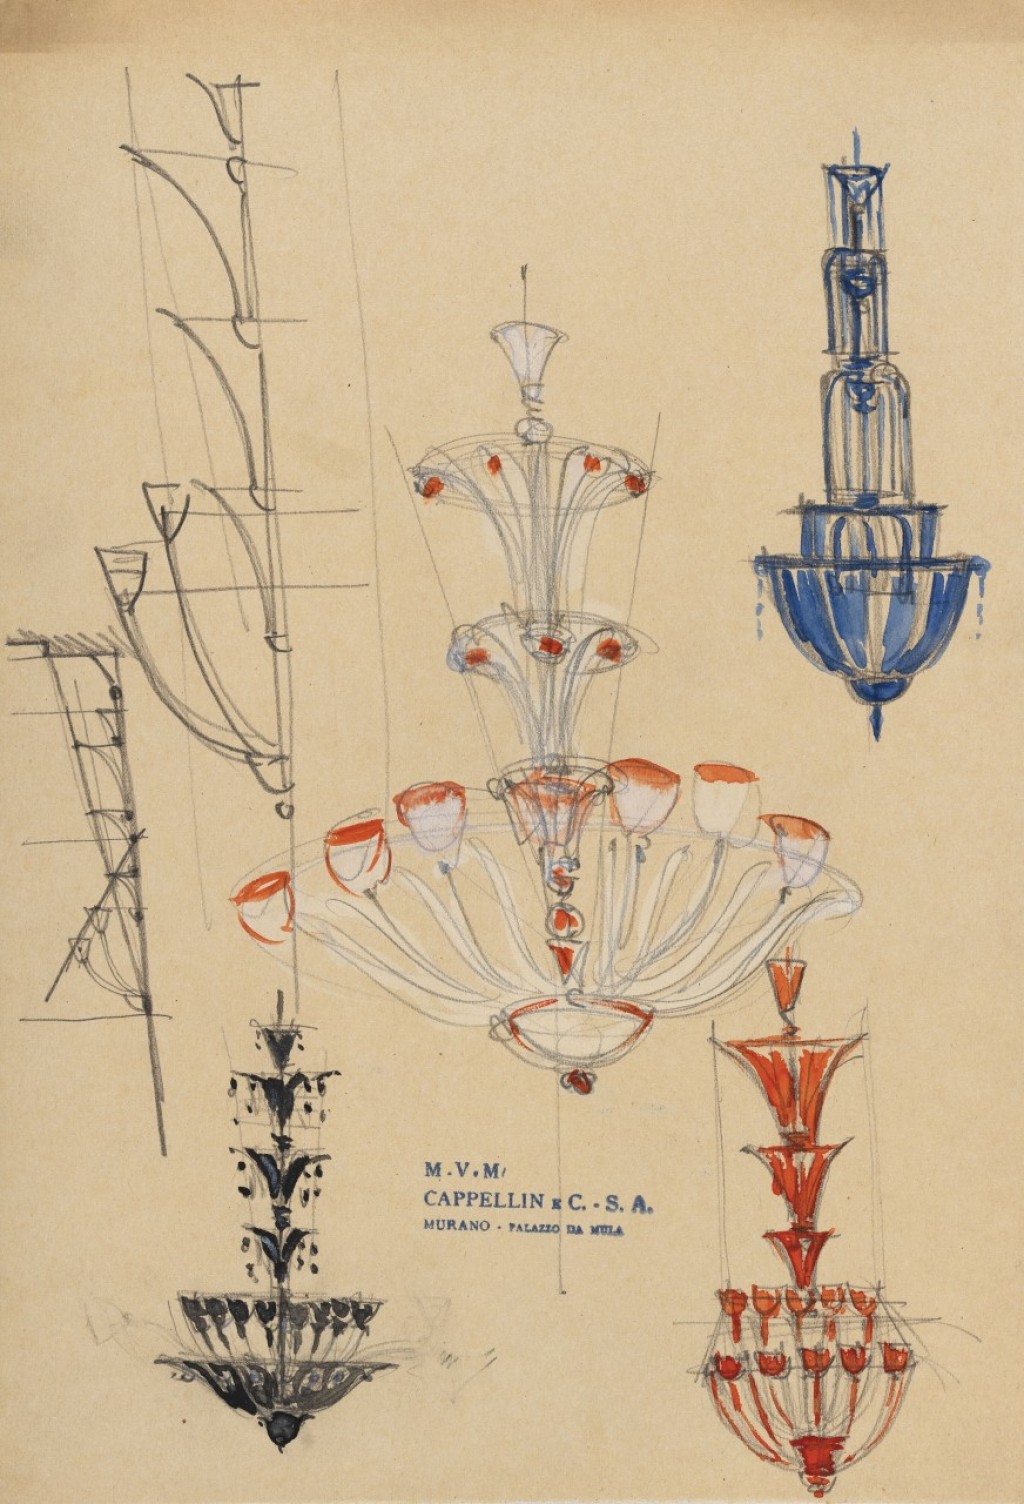 bozzetti di lampadari per la manifattura Cappellin, Murano - Carlo Scarpa 